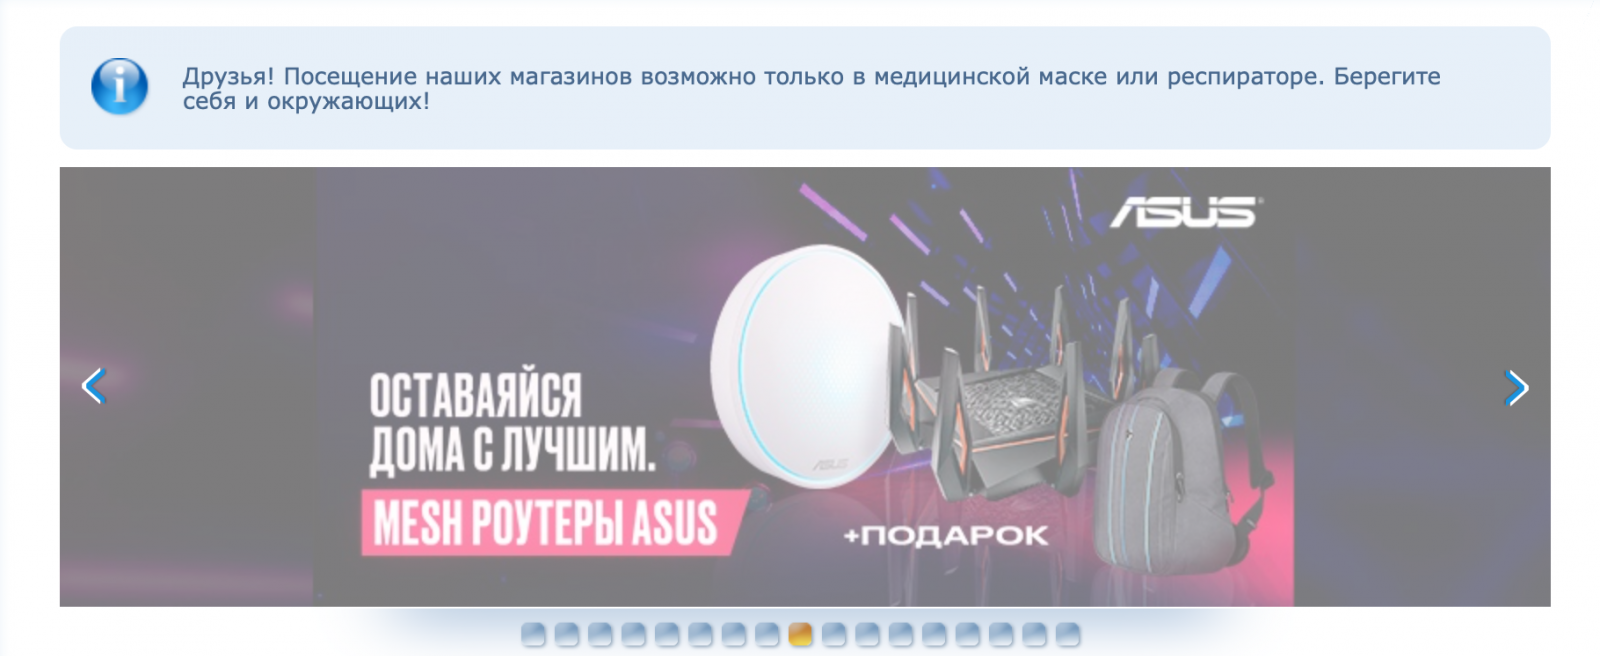 Товары для дома, гаджеты, электроника по выгодным ценам в интернет-магазине Elmir.ua